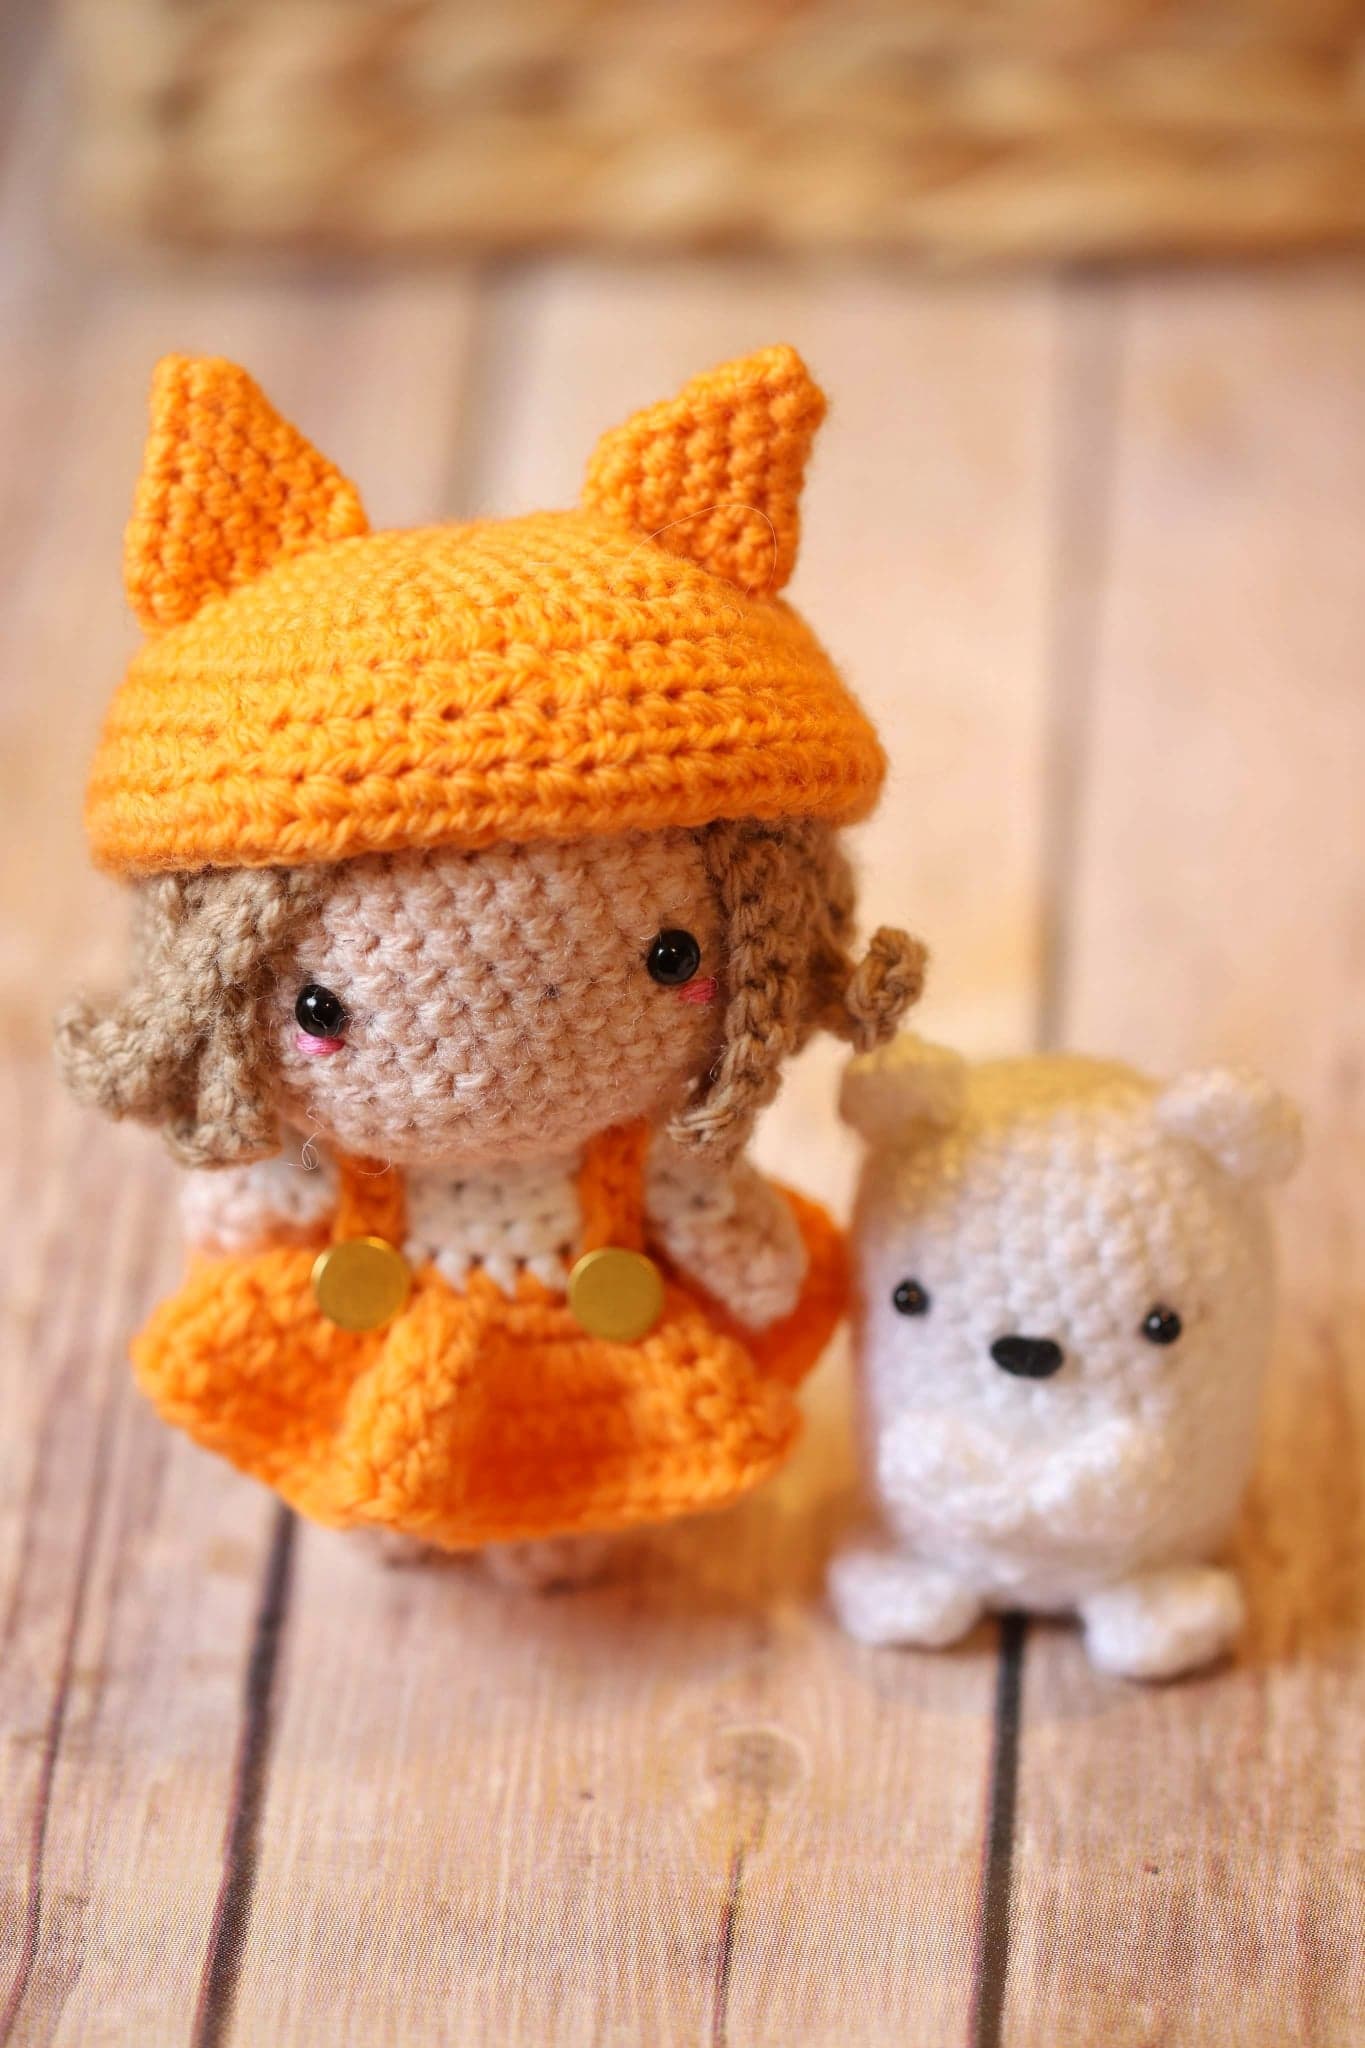 Learn to Crochet Amigurumi